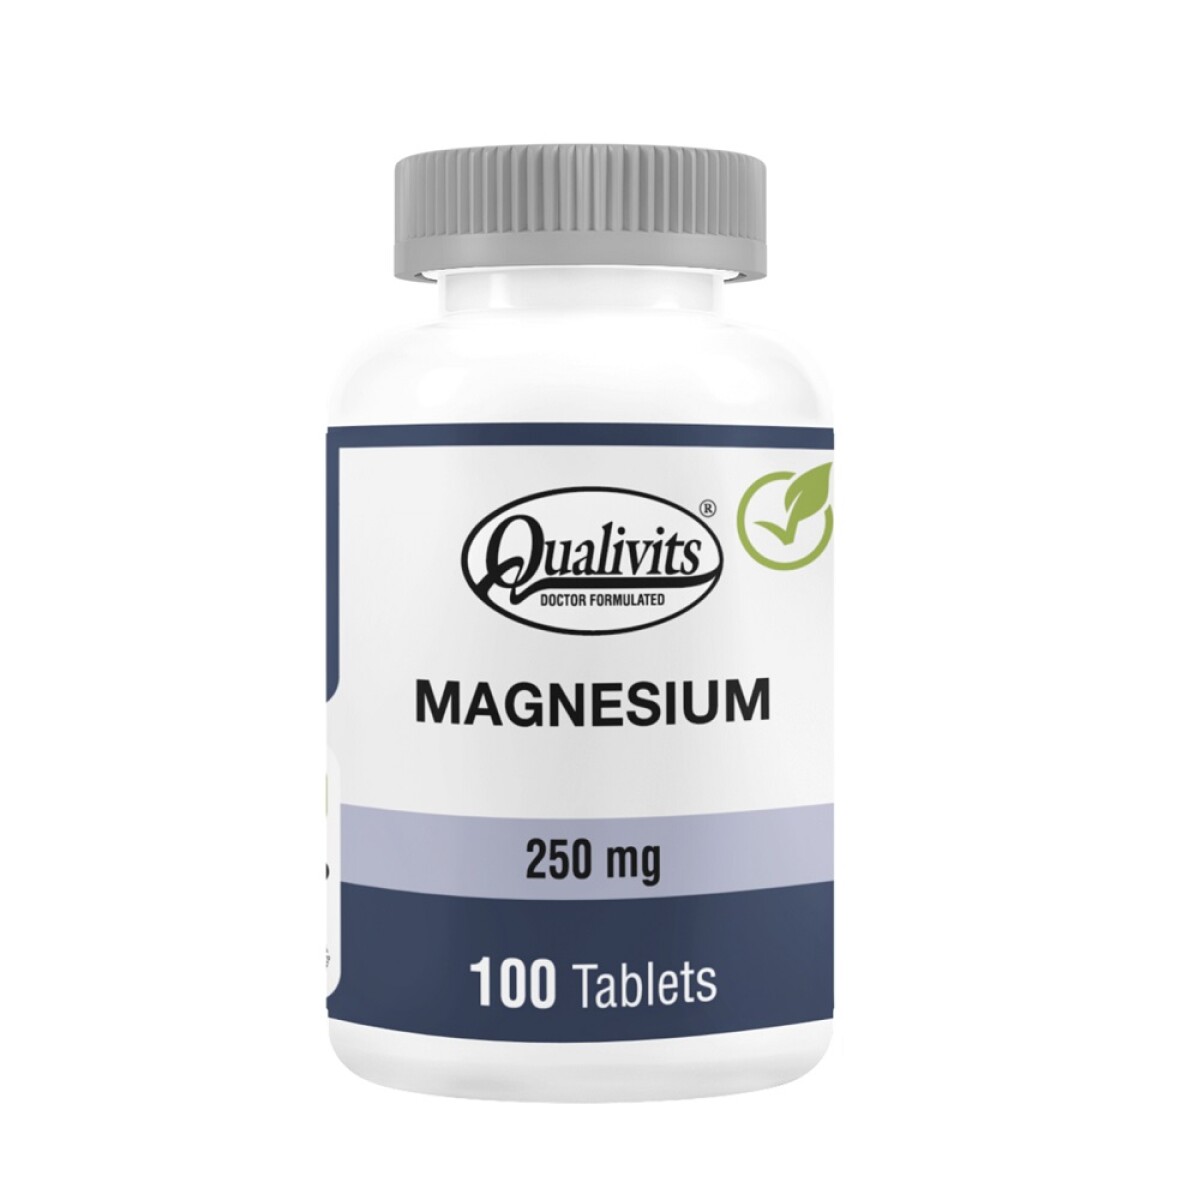 Magnesium Qualivits 250 Mg. 100 Tabs. 